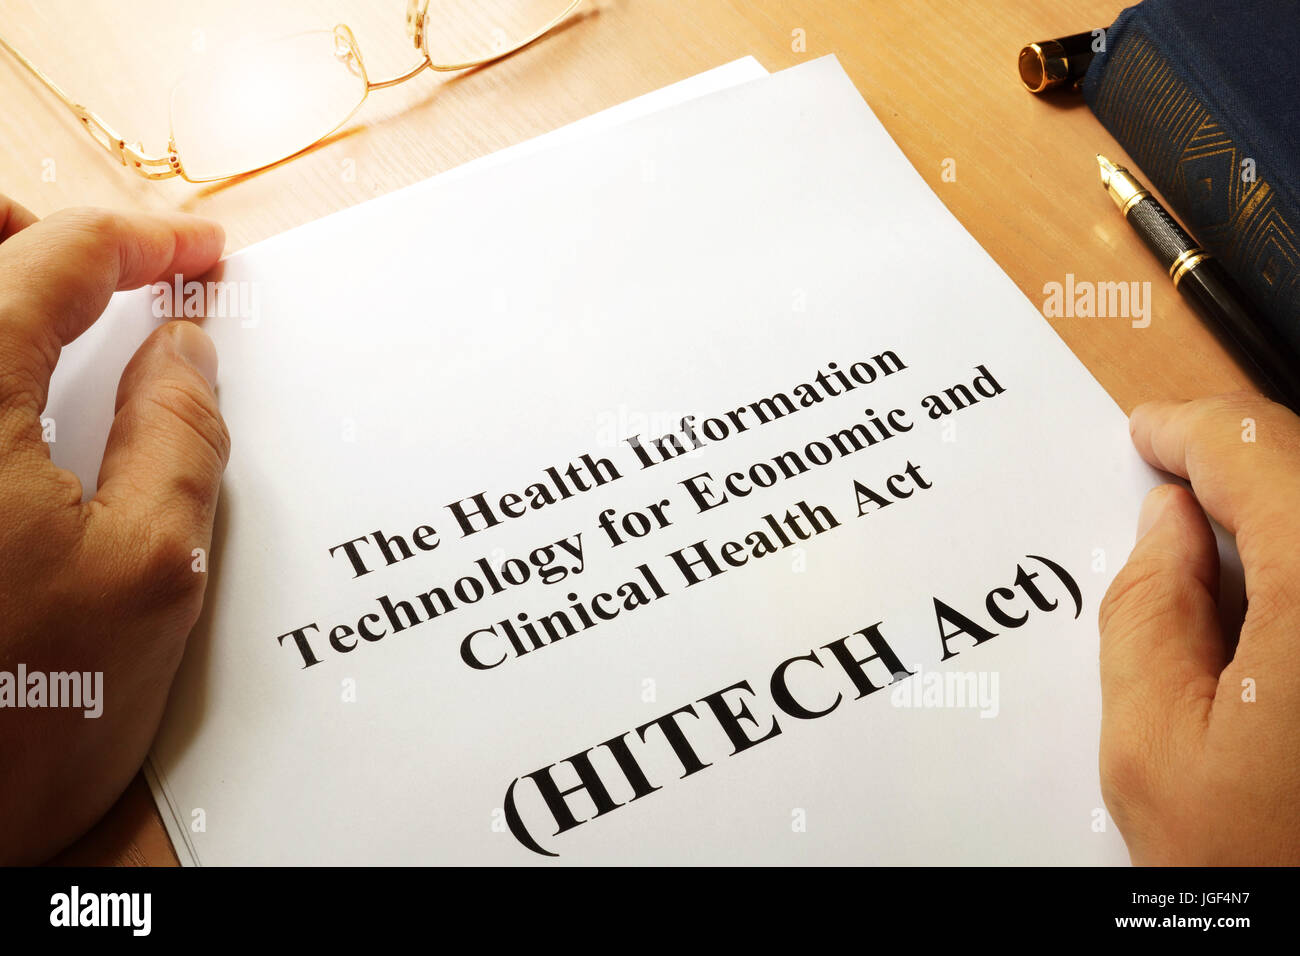 La salute della tecnologia dell informazione per economiche e cliniche Health Act (Hitech Act) Foto Stock